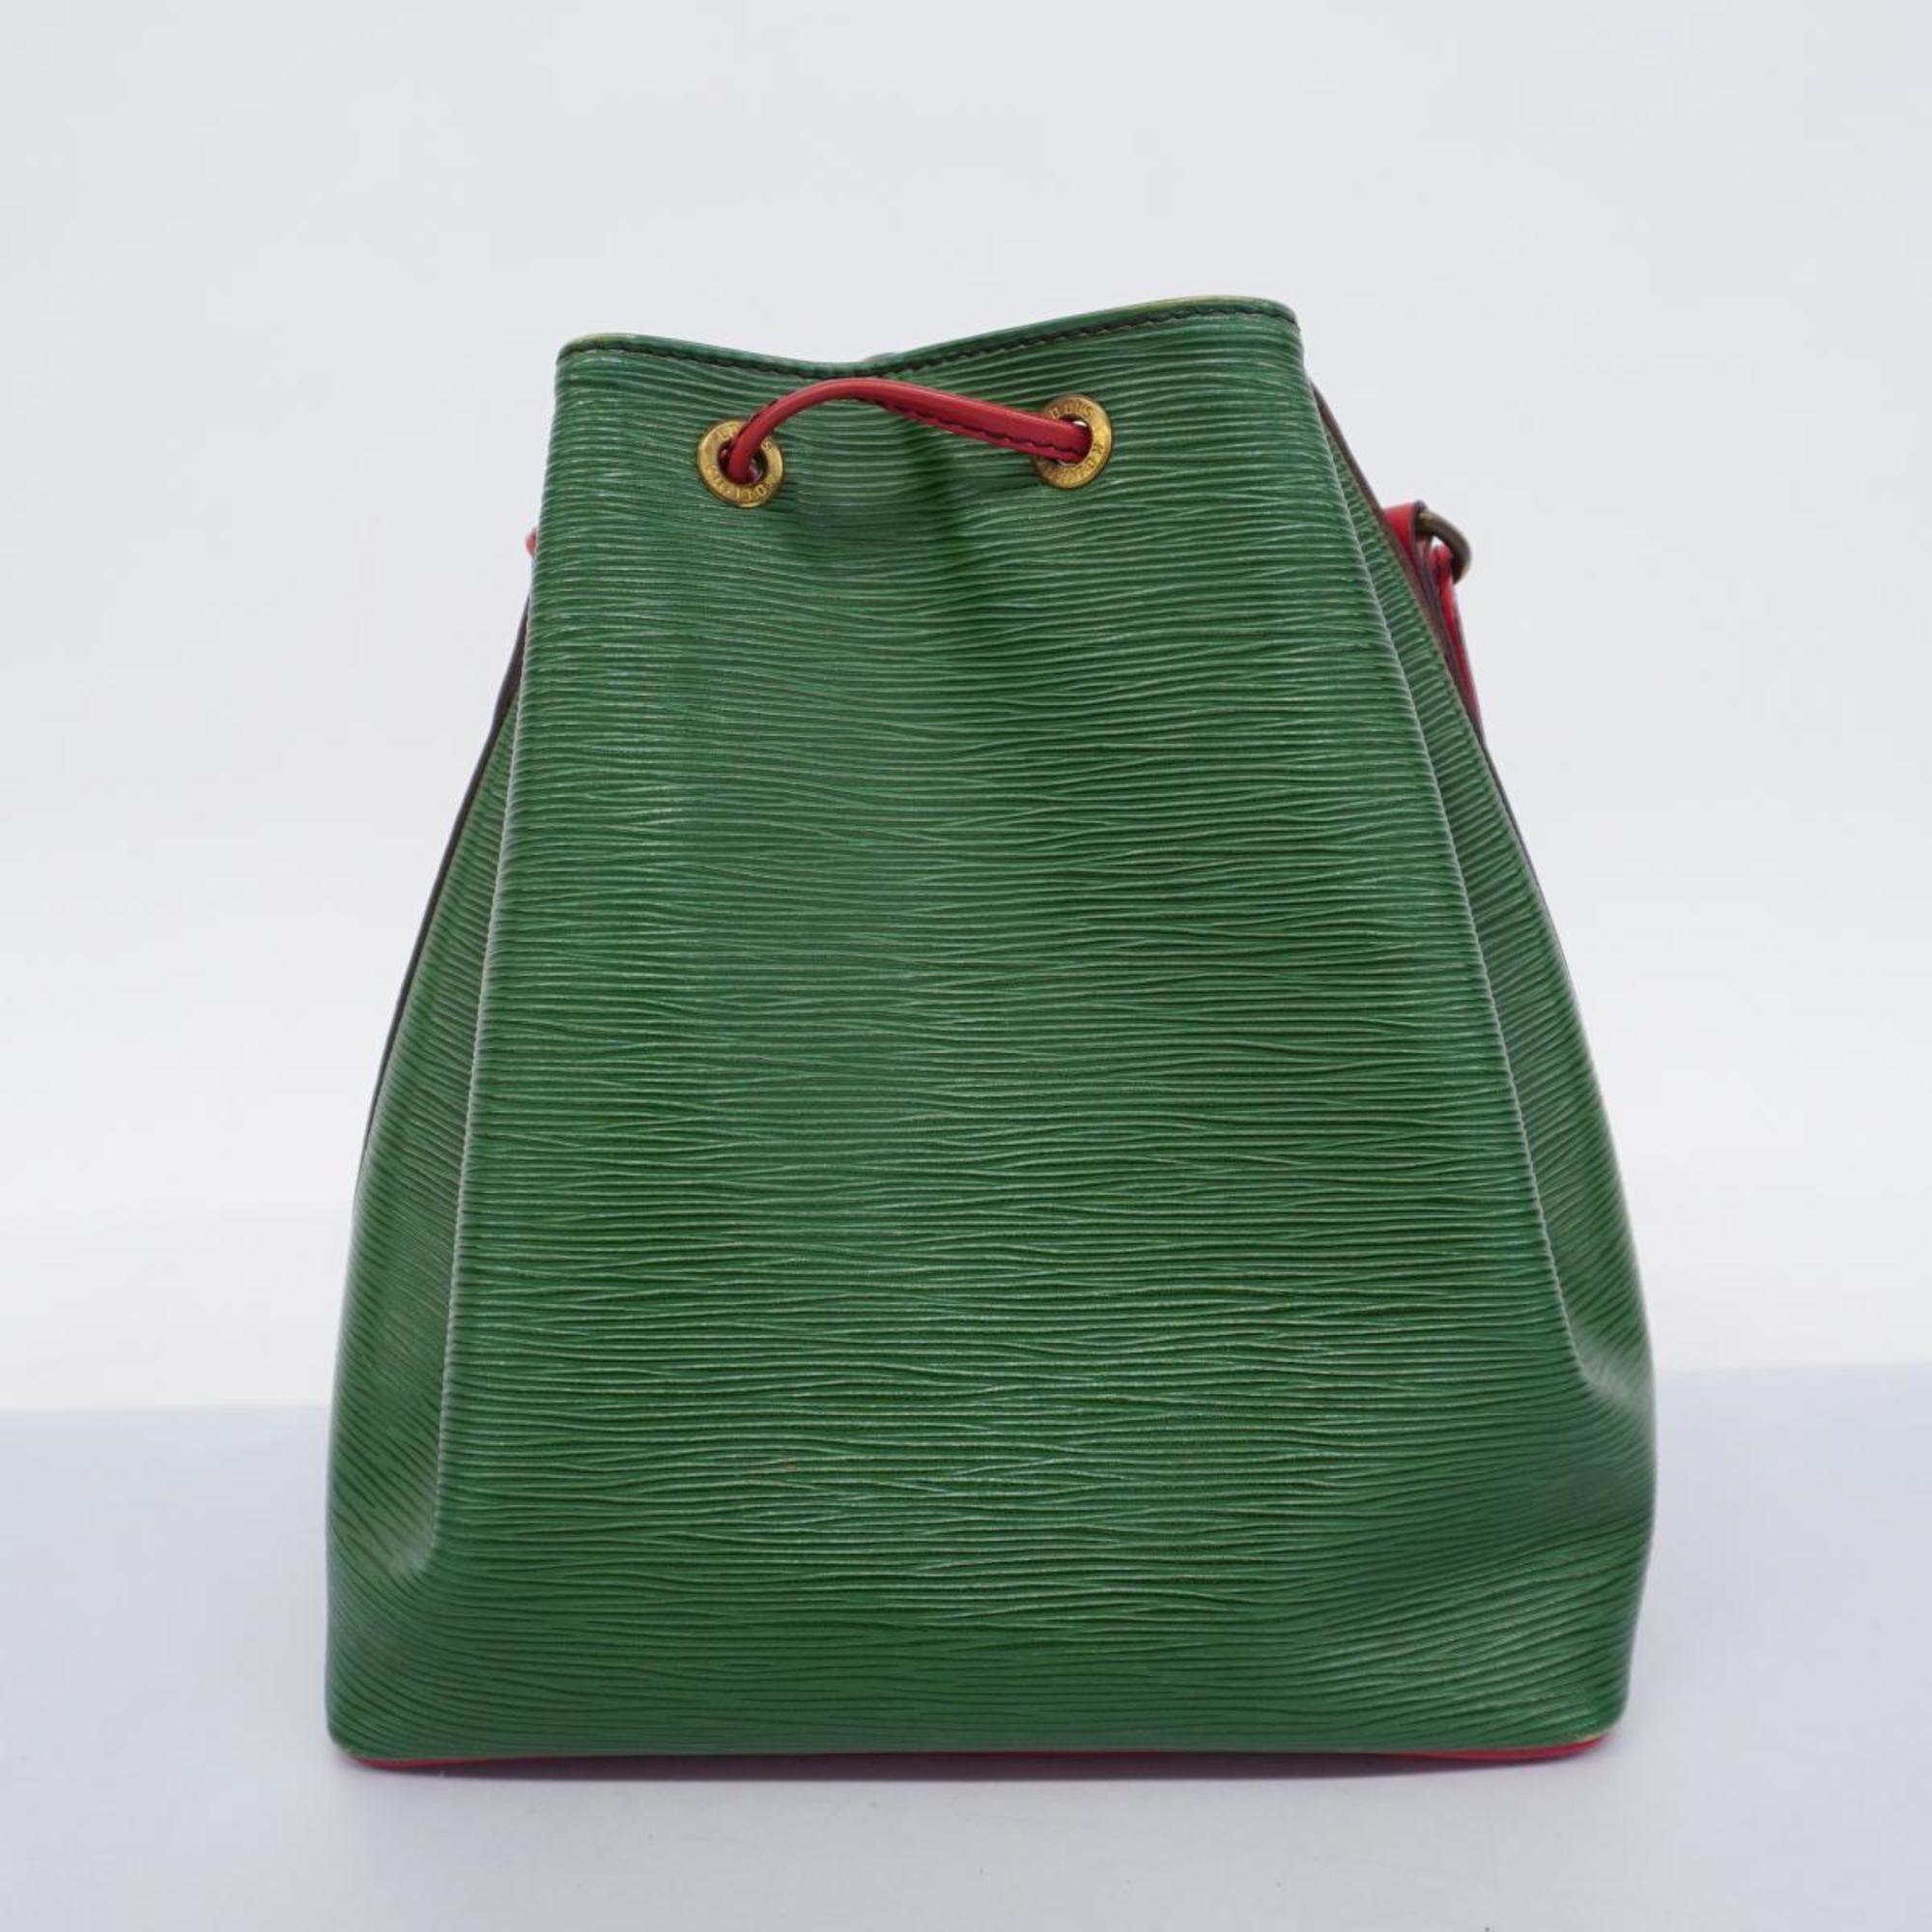 Louis Vuitton Shoulder Bag Epi Petit Noe M44147 Castilian Red Borneo Green Ladies